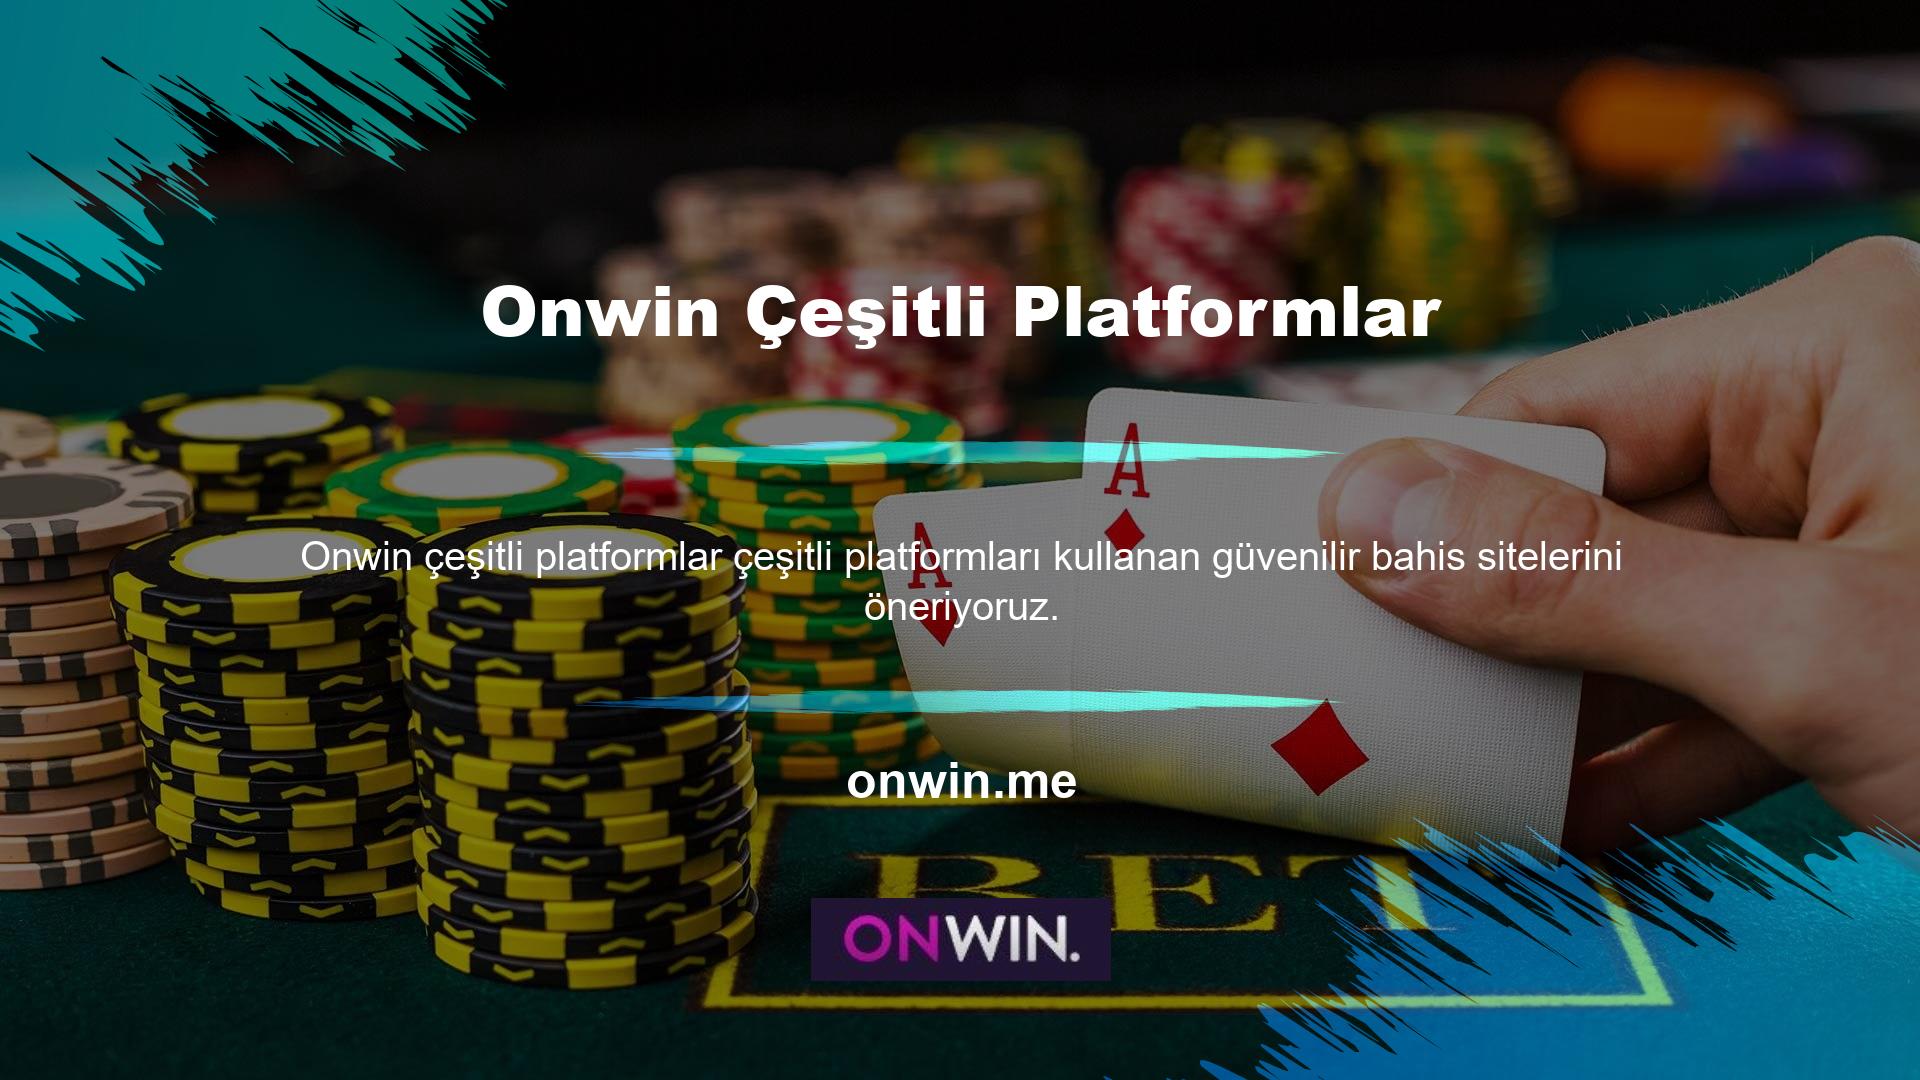 Casino siteleri, kullanıcılara yatırım yapmadan puan kazanma fırsatı sunar